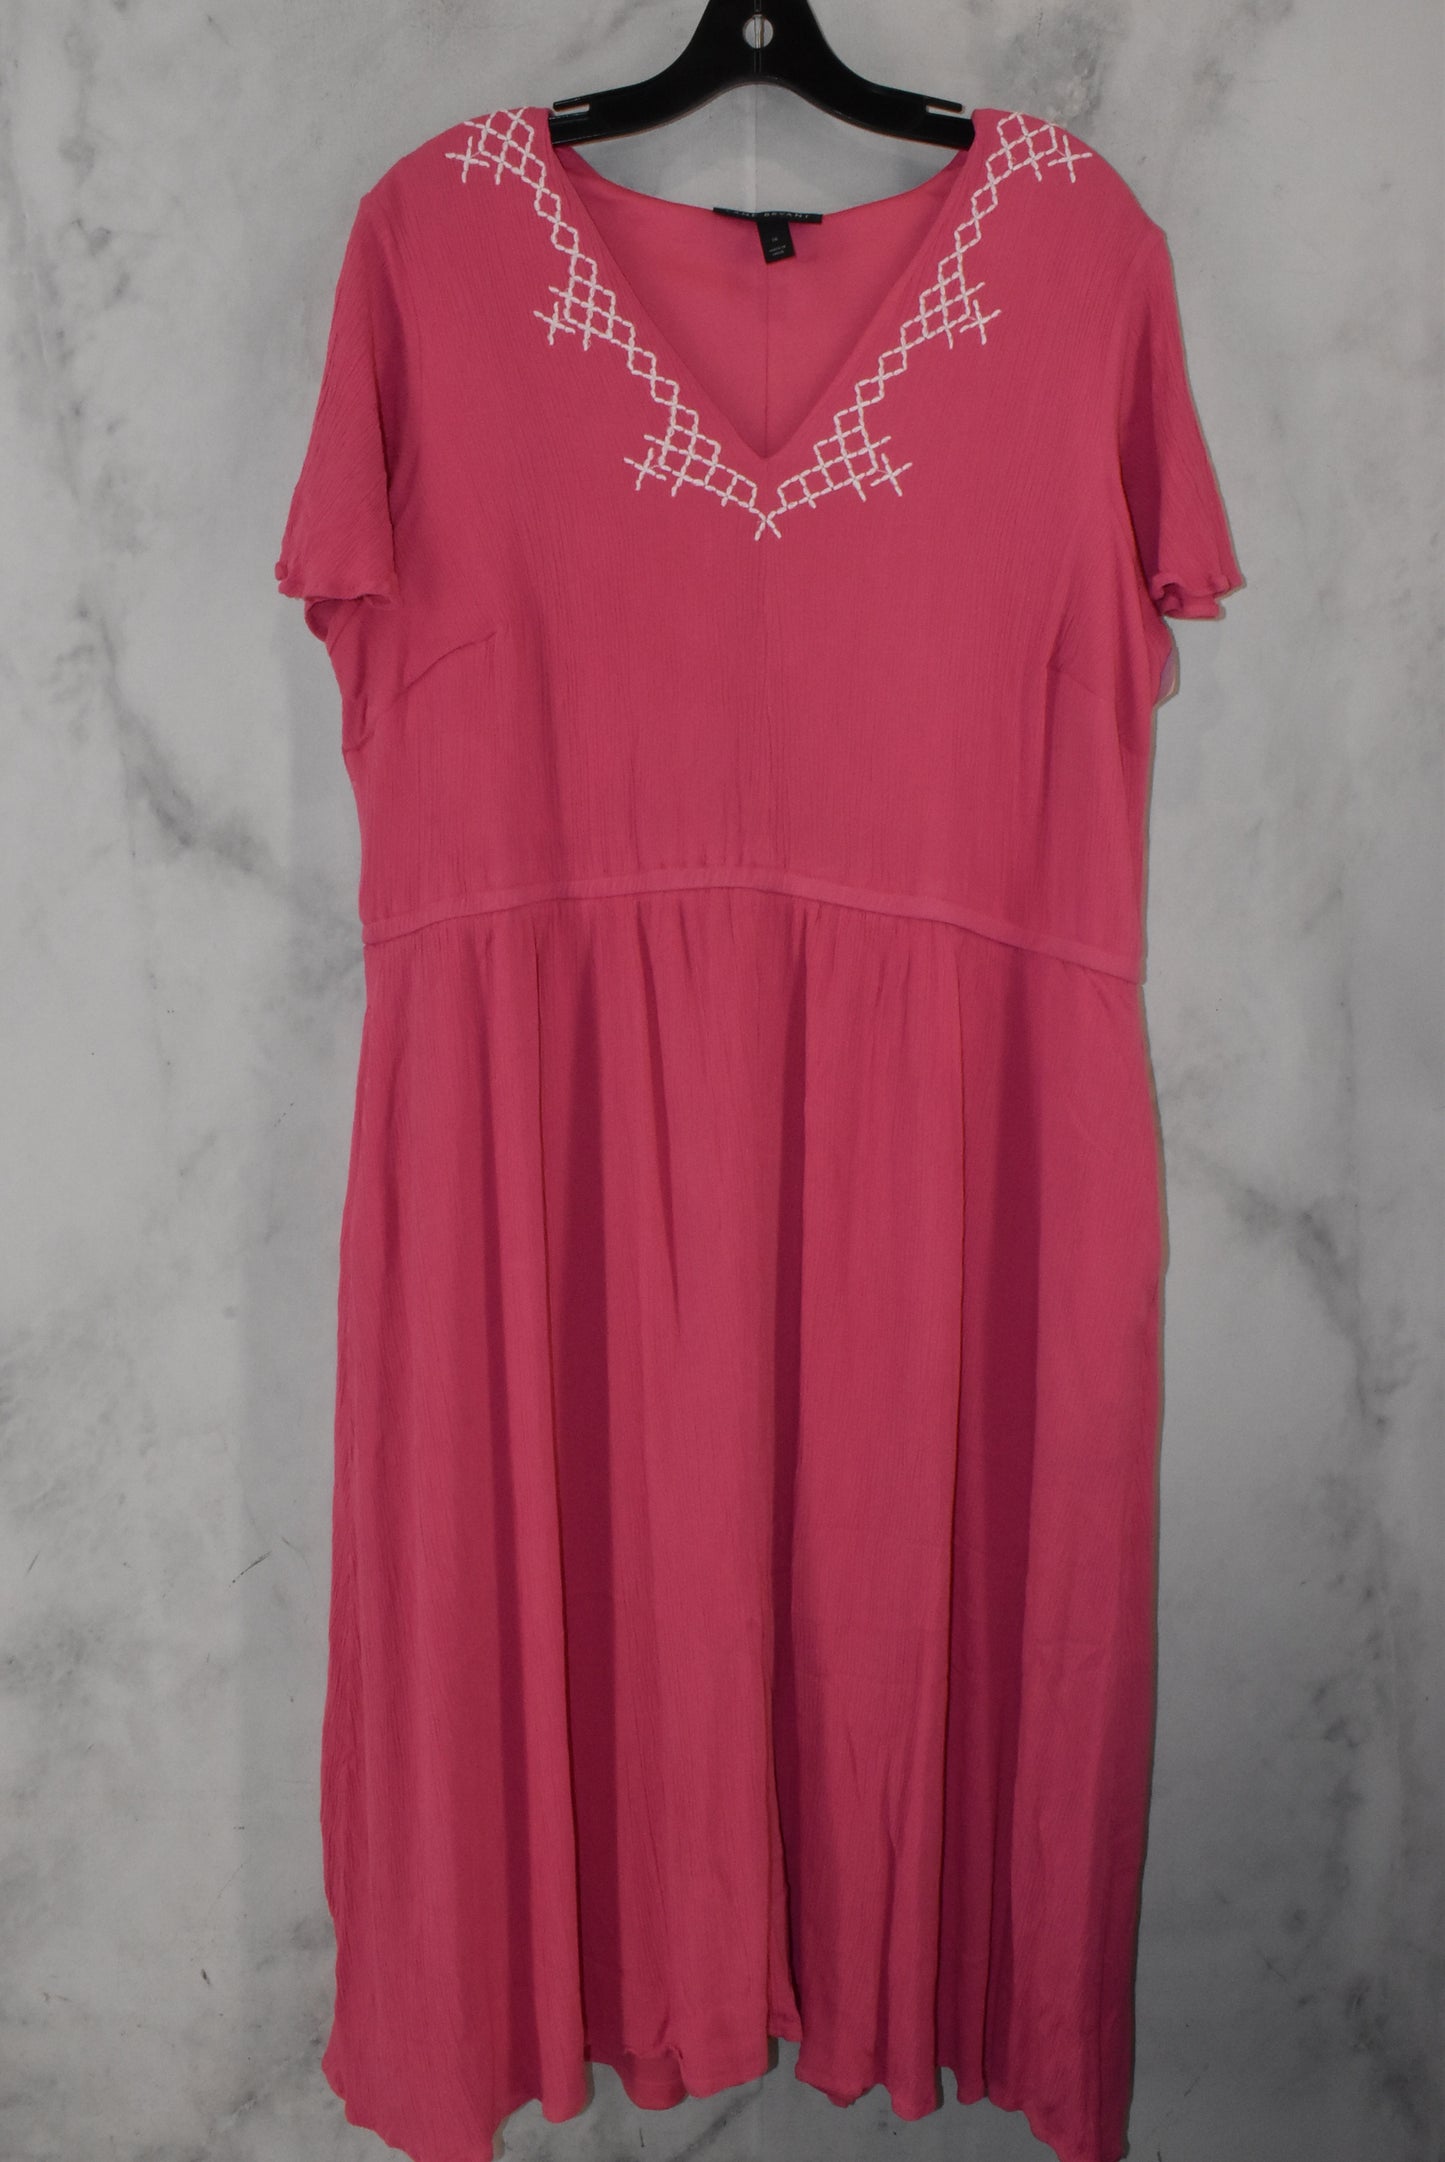 Dress Casual Midi By Lane Bryant  Size: 18